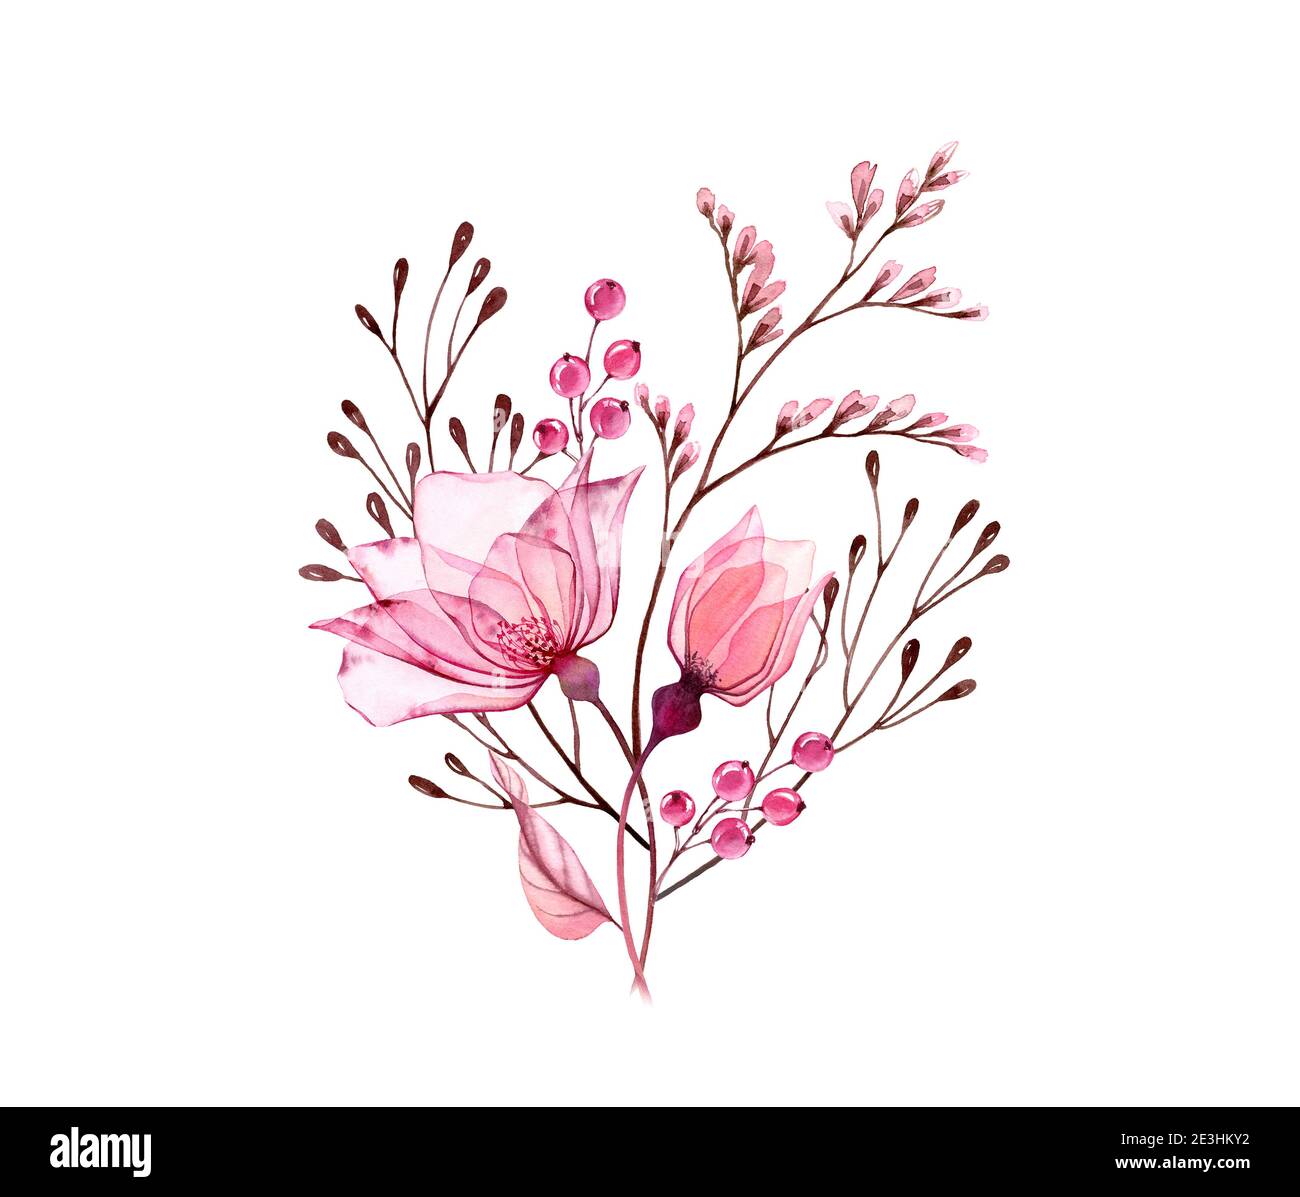 Aquarell Rosenstrauß. Transparente rosa Blüten mit Zweigen und Beeren isoliert auf weiß. Handbemalte Vintage-Kunstwerke. Botanische Abbildung Stockfoto